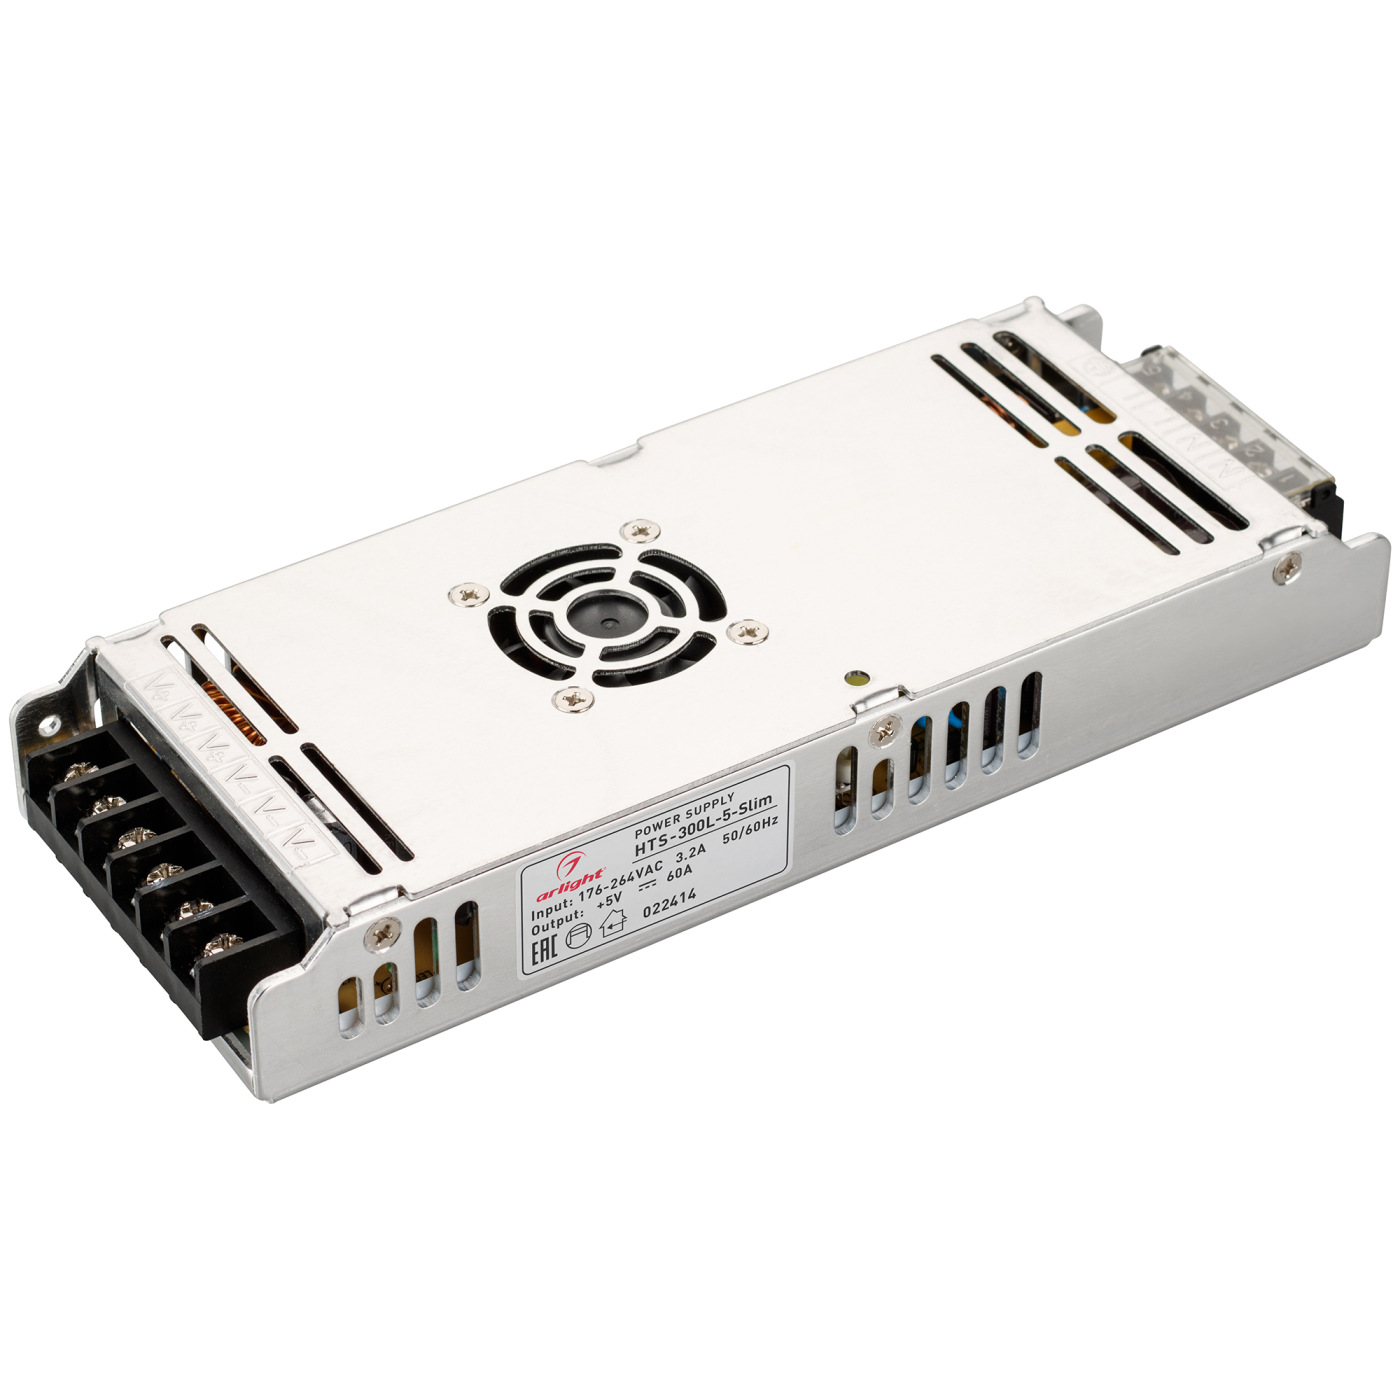 Блок питания HTS-300L-5-Slim (5V, 60A, 300W) (Arlight, IP20 Сетка, 3 года) блок питания hts 300 12 ls 12v 25a 300w arlight ip20 сетка 3 года